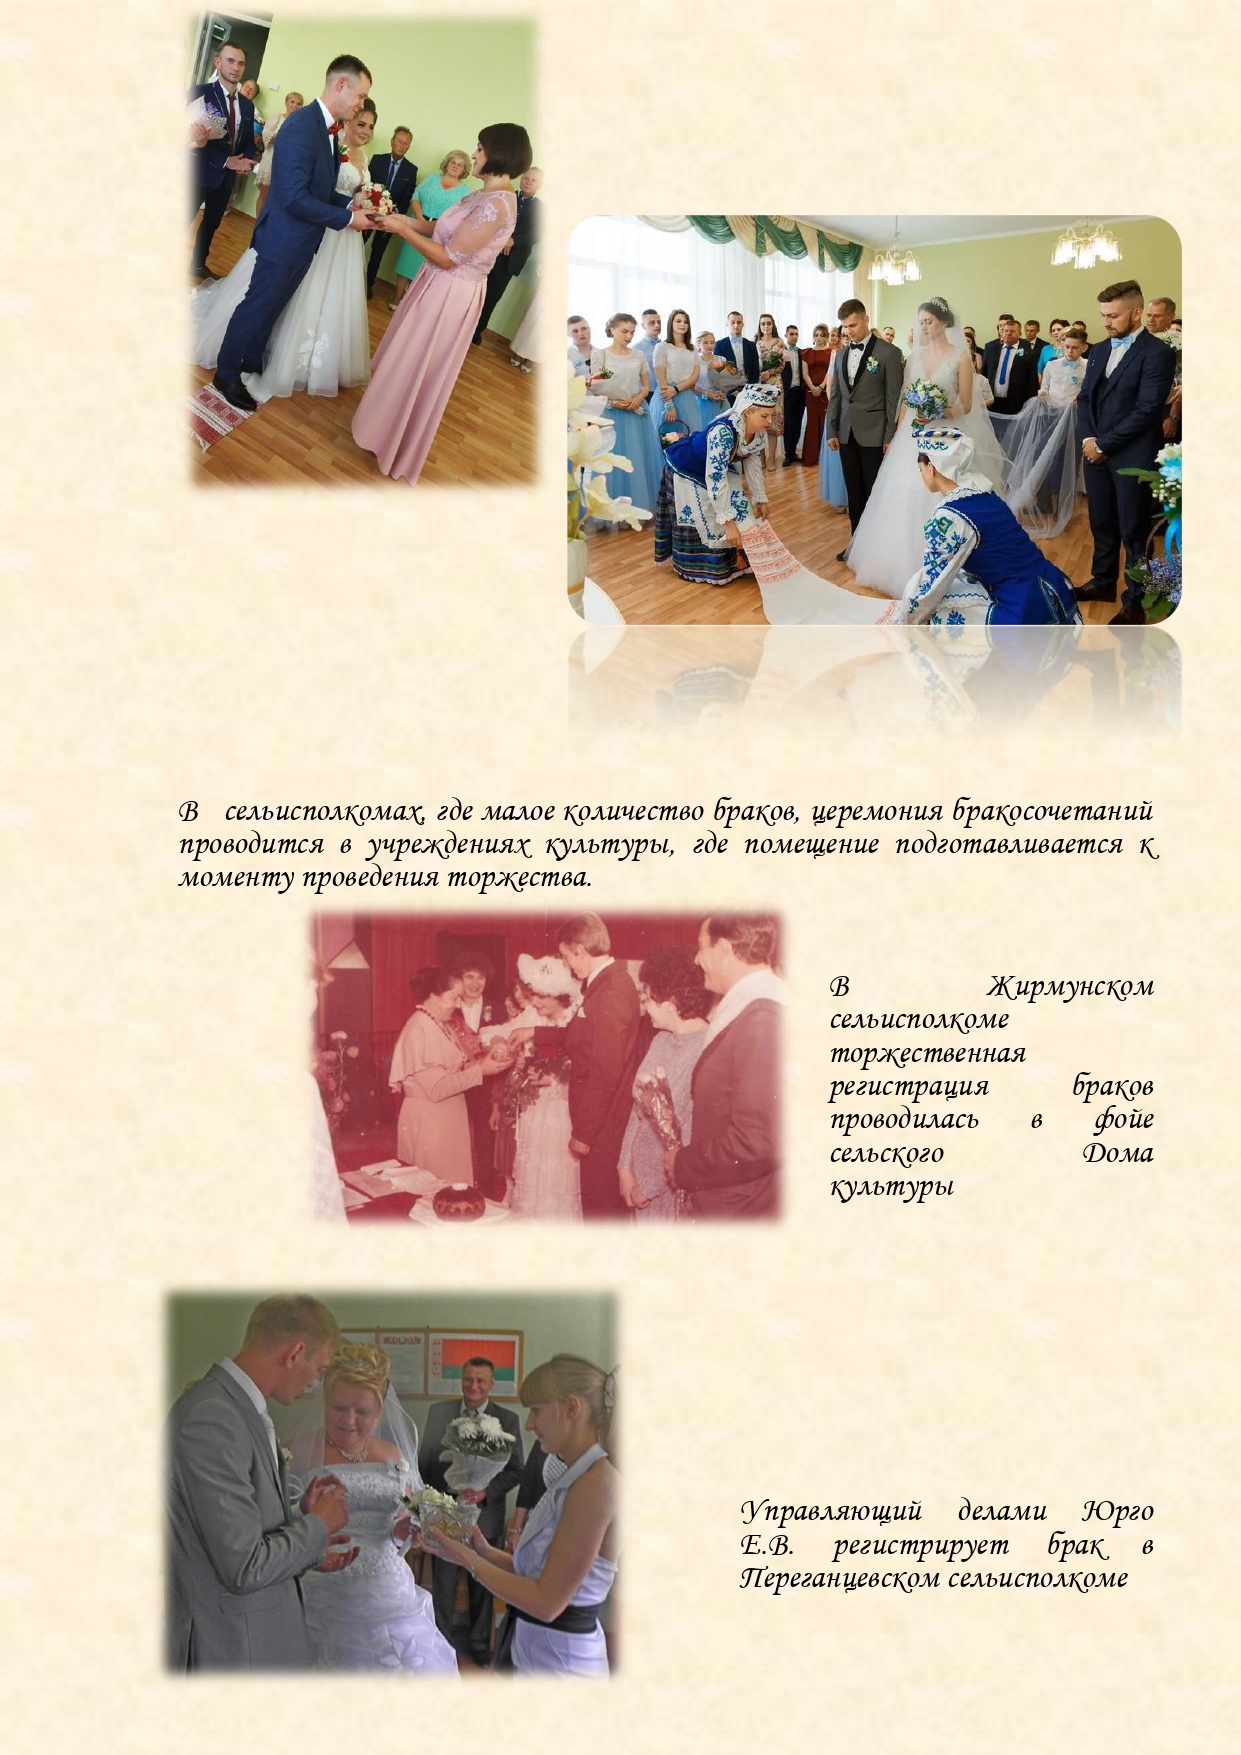 История органов загса Вороновского района с изменениями (1)_page-0019.jpg